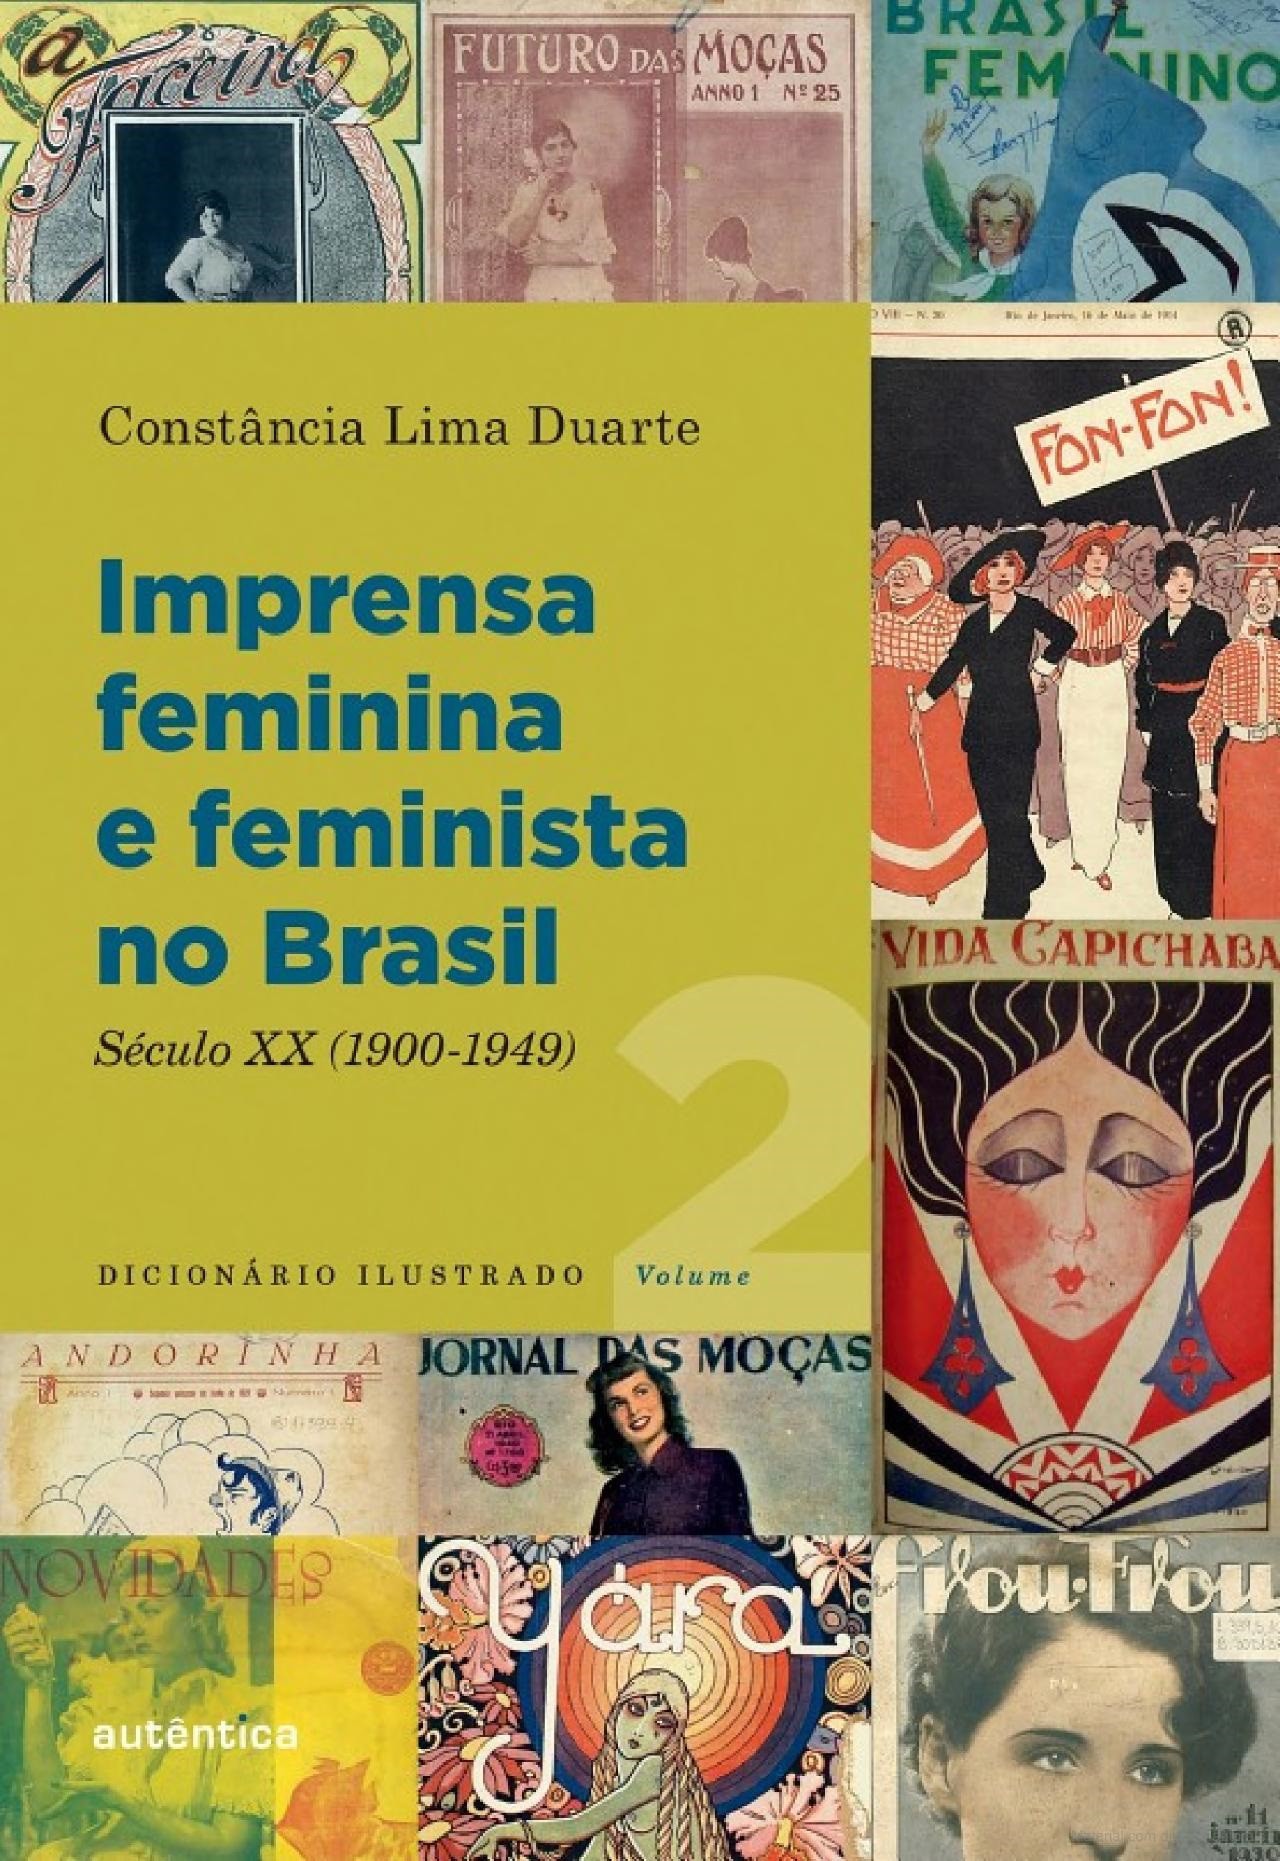 Categoria Comunicação e Informação é disputada por obra da professora Constância Lima Duarte